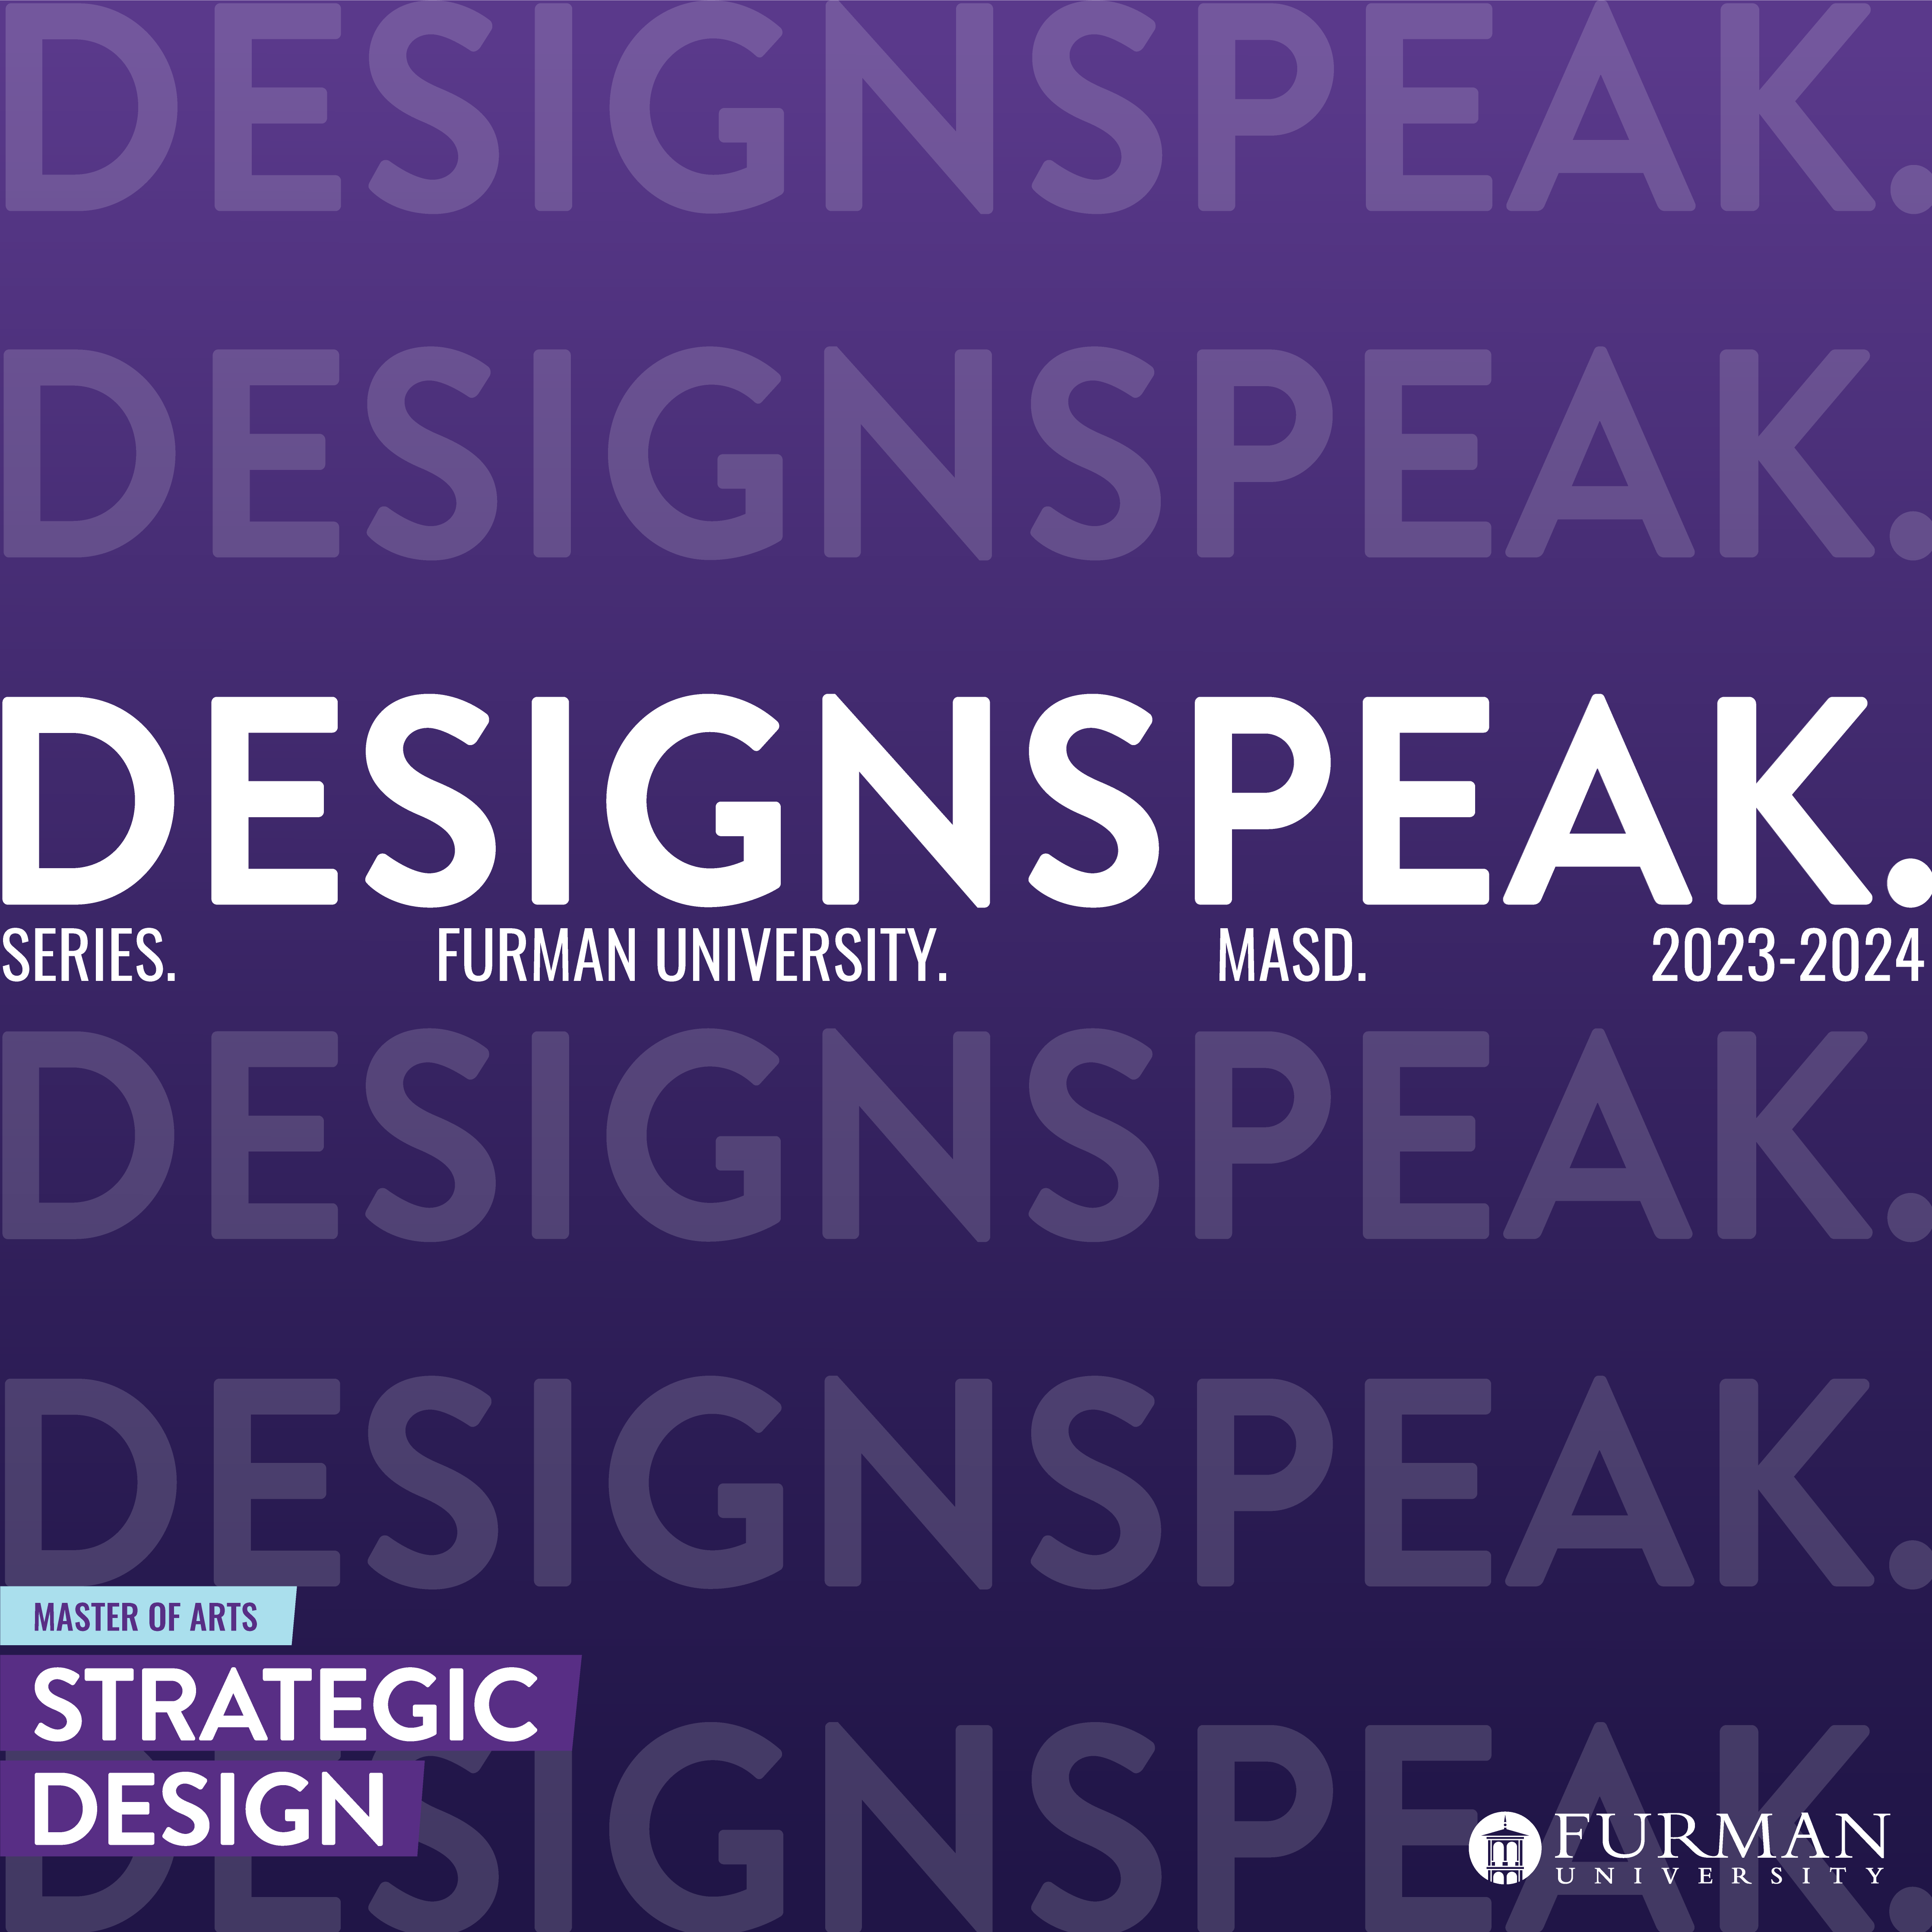 DESIGNSPEAK. A Design Speaker Series